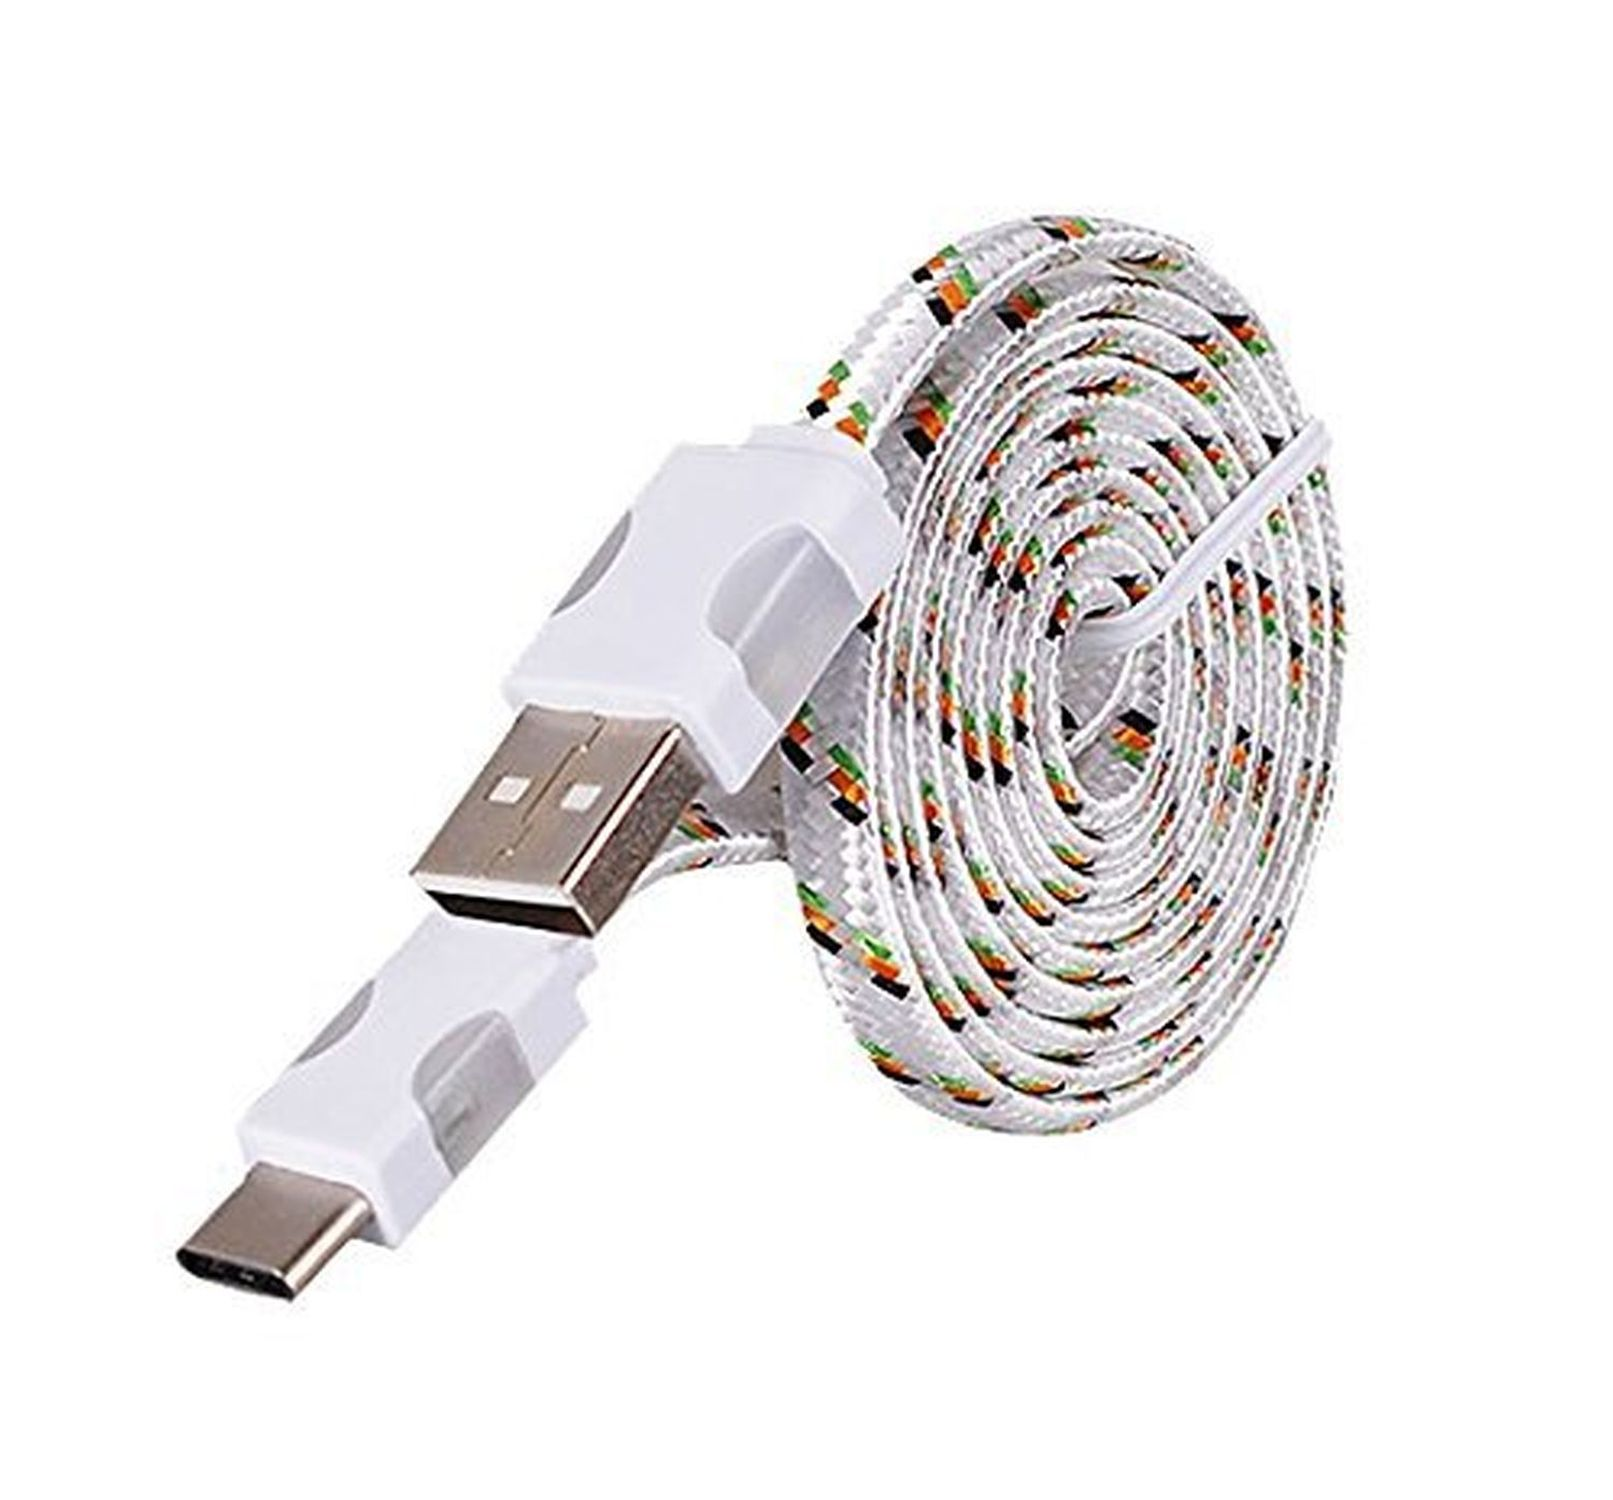 Typ Weiß Nylon, COFI C Ladekabel, LED Licht 1m USB